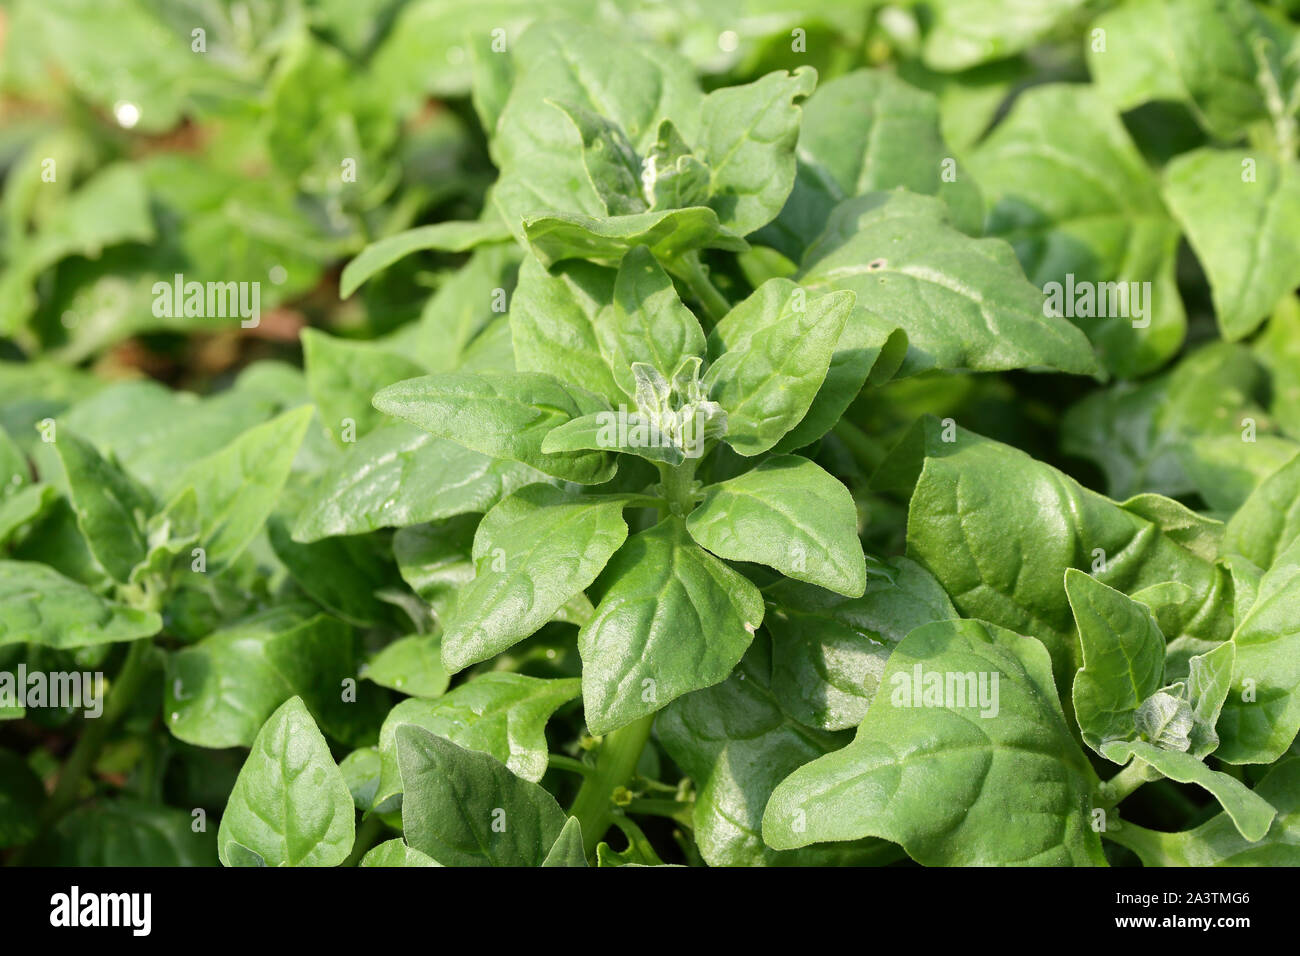 Nueva Zelandia/ espinaca col de Cook (Tetragonia tetragonioides) las hojas comestibles planta usada como verdura de hoja como la espinaca Foto de stock